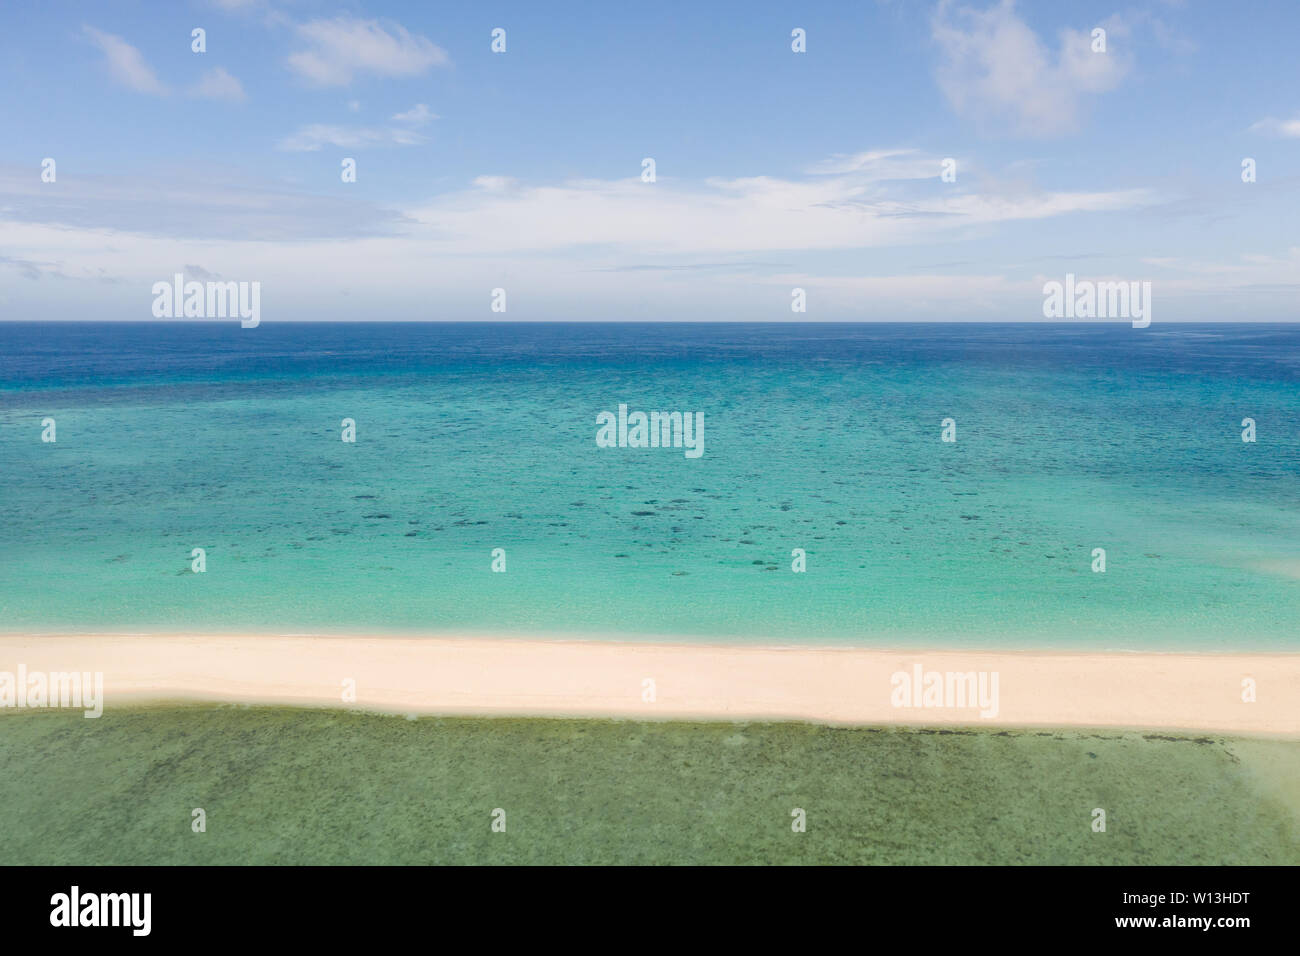 Spiaggia di sabbia isola su una scogliera di corallo, vista dall'alto. Atollo con un'isola di sabbia bianca. Foto Stock